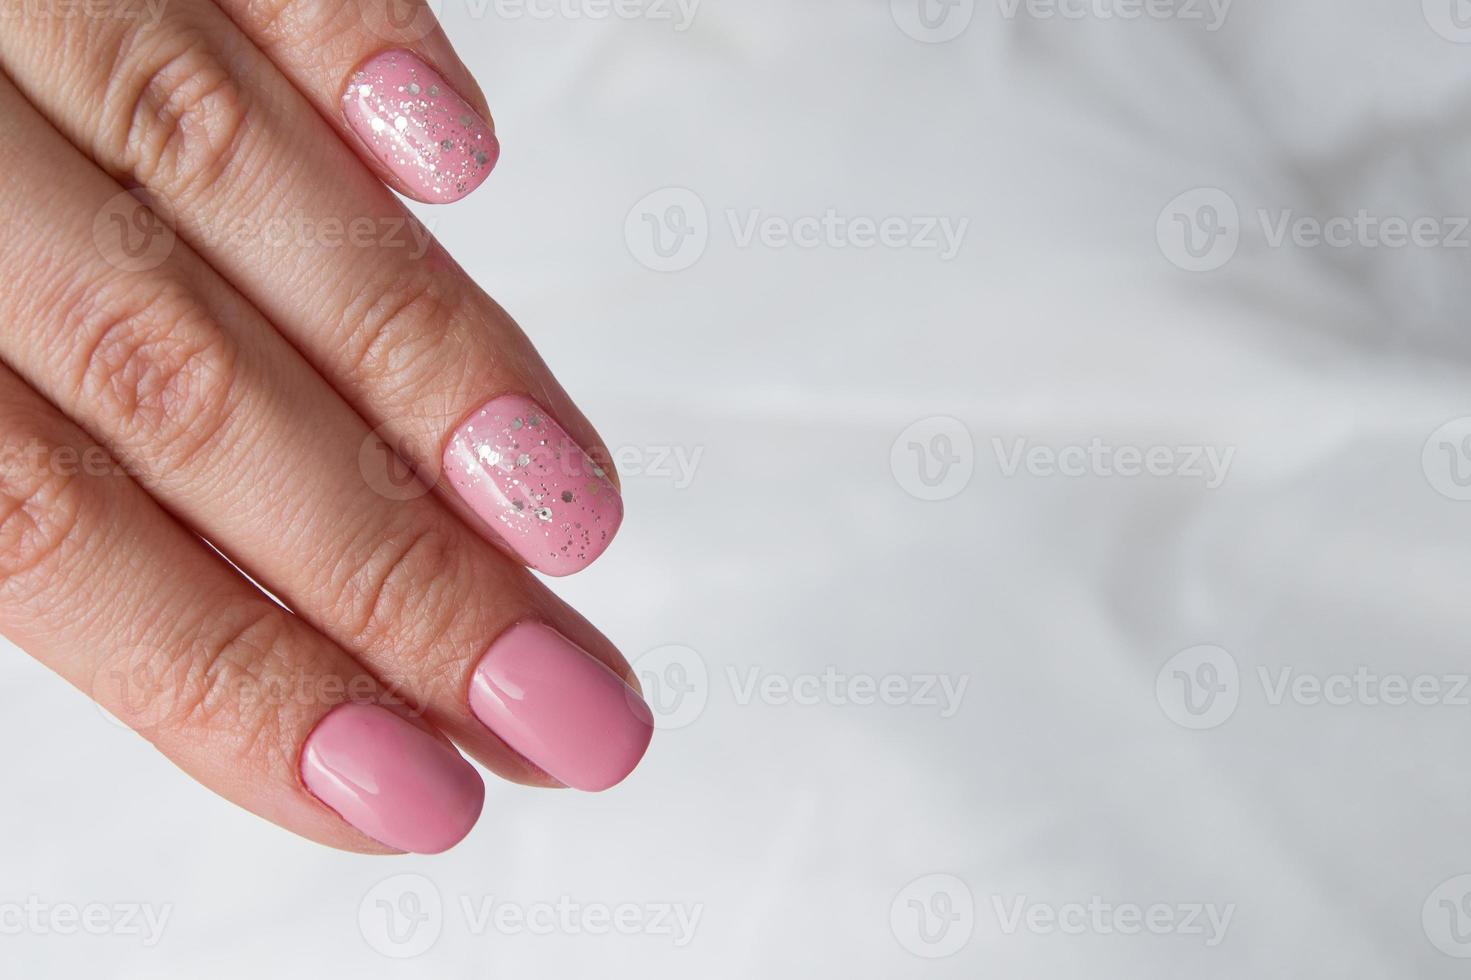 beau vernis rose tendre et scintille sur les ongles - manucure de revêtement de salon de vernis gel photo